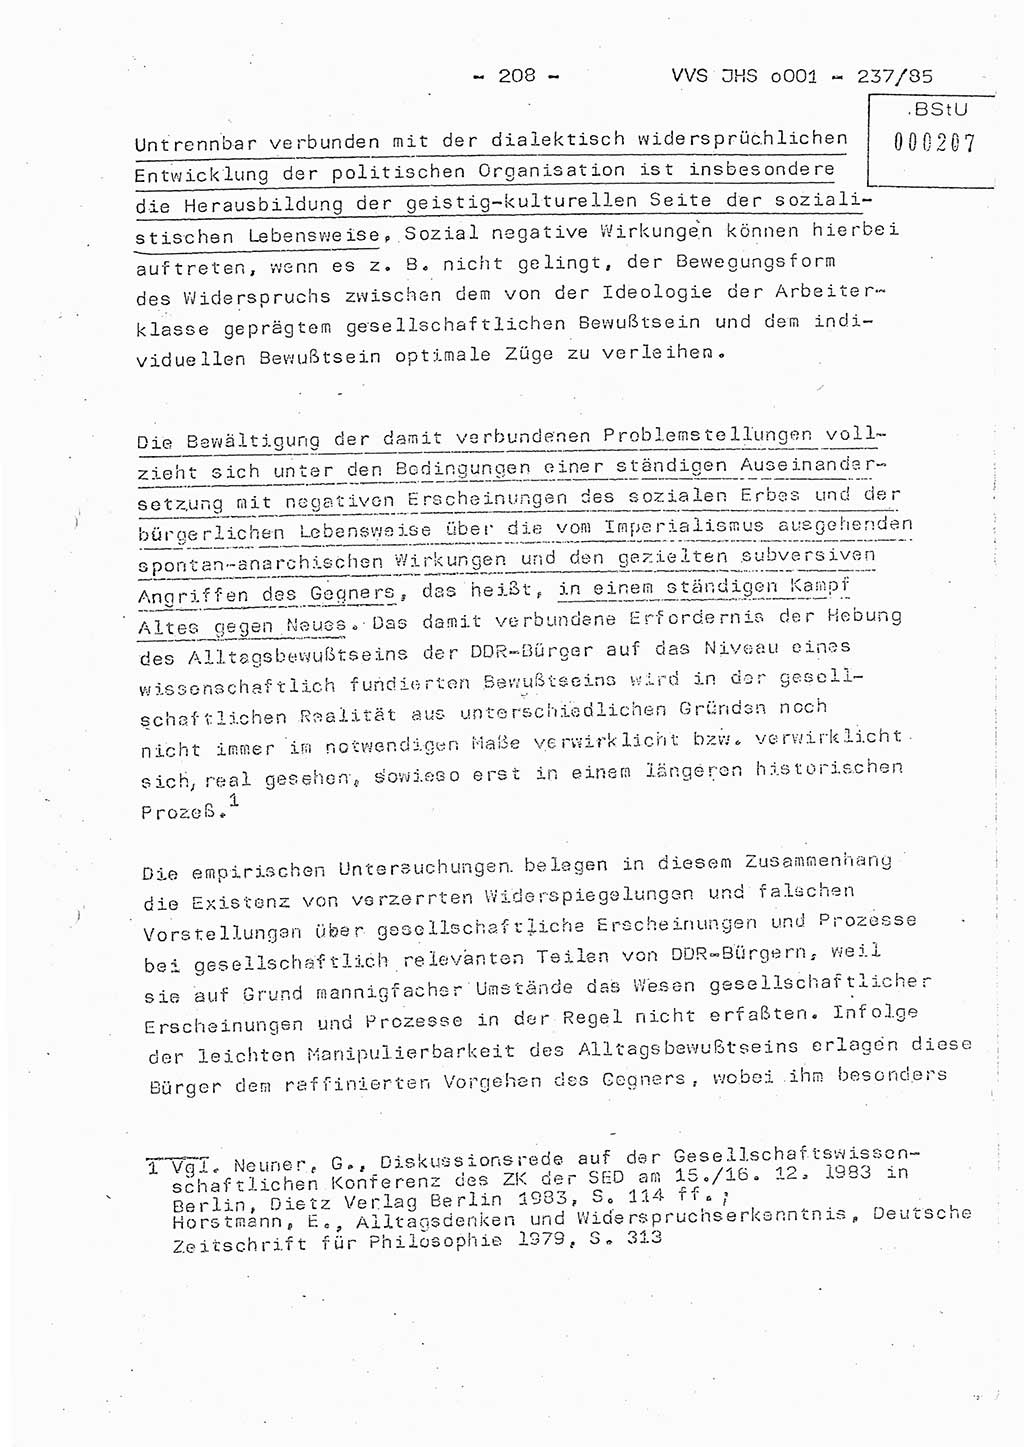 Dissertation Oberstleutnant Peter Jakulski (JHS), Oberstleutnat Christian Rudolph (HA Ⅸ), Major Horst Böttger (ZMD), Major Wolfgang Grüneberg (JHS), Major Albert Meutsch (JHS), Ministerium für Staatssicherheit (MfS) [Deutsche Demokratische Republik (DDR)], Juristische Hochschule (JHS), Vertrauliche Verschlußsache (VVS) o001-237/85, Potsdam 1985, Seite 208 (Diss. MfS DDR JHS VVS o001-237/85 1985, S. 208)